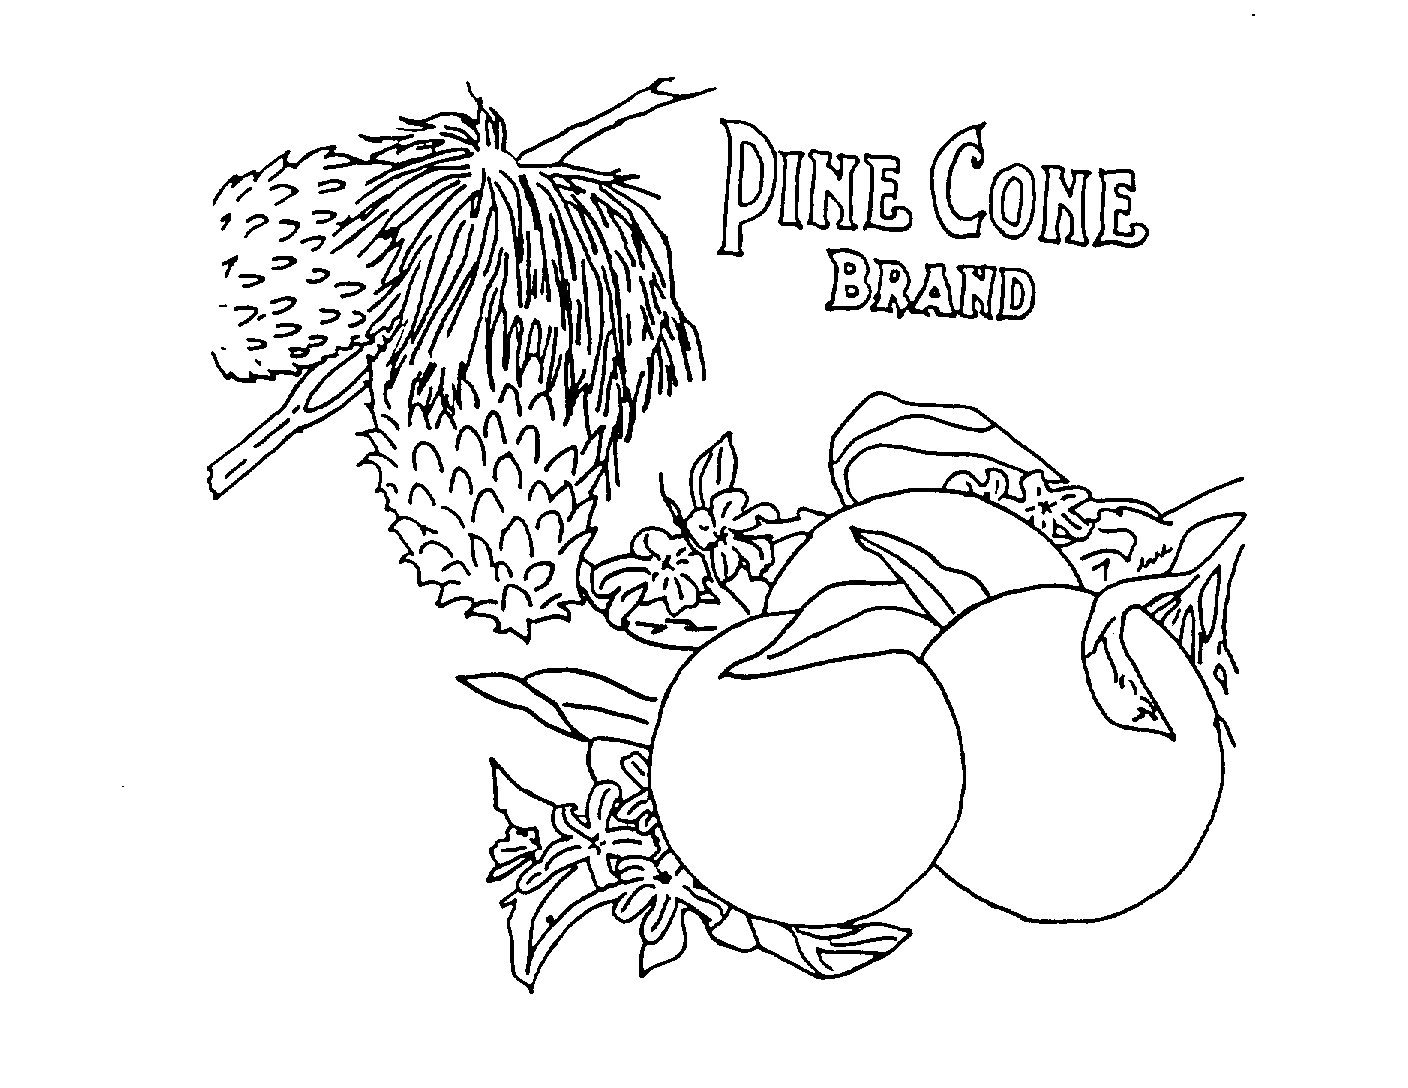  PINE CONE BRAND